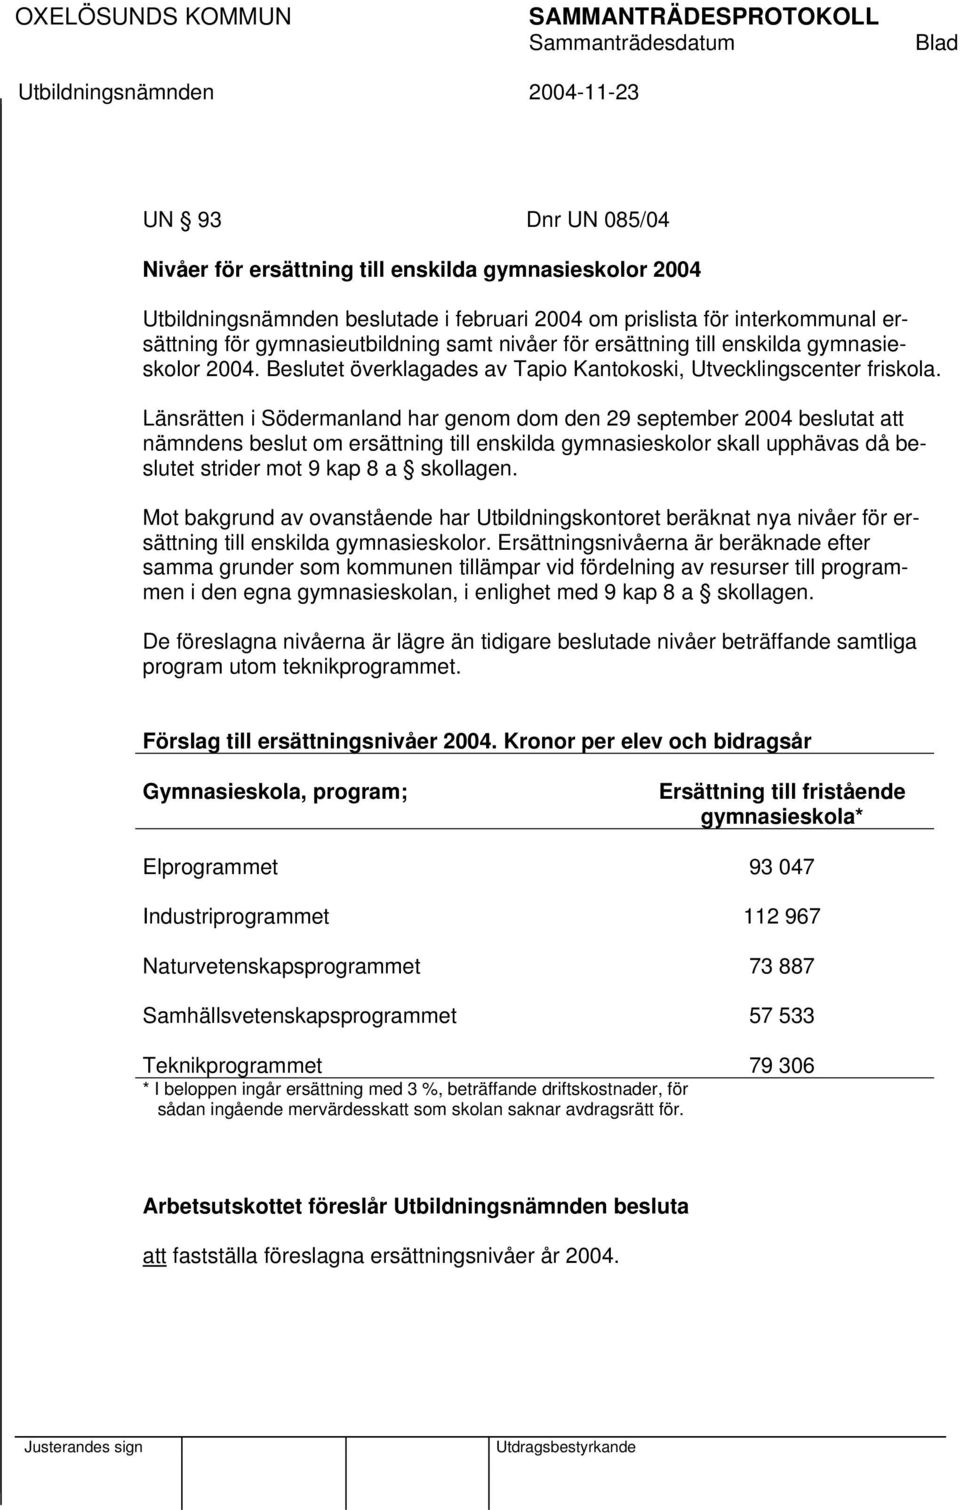 Länsrätten i Södermanland har genom dom den 29 september 2004 beslutat att nämndens beslut om ersättning till enskilda gymnasieskolor skall upphävas då beslutet strider mot 9 kap 8 a skollagen.